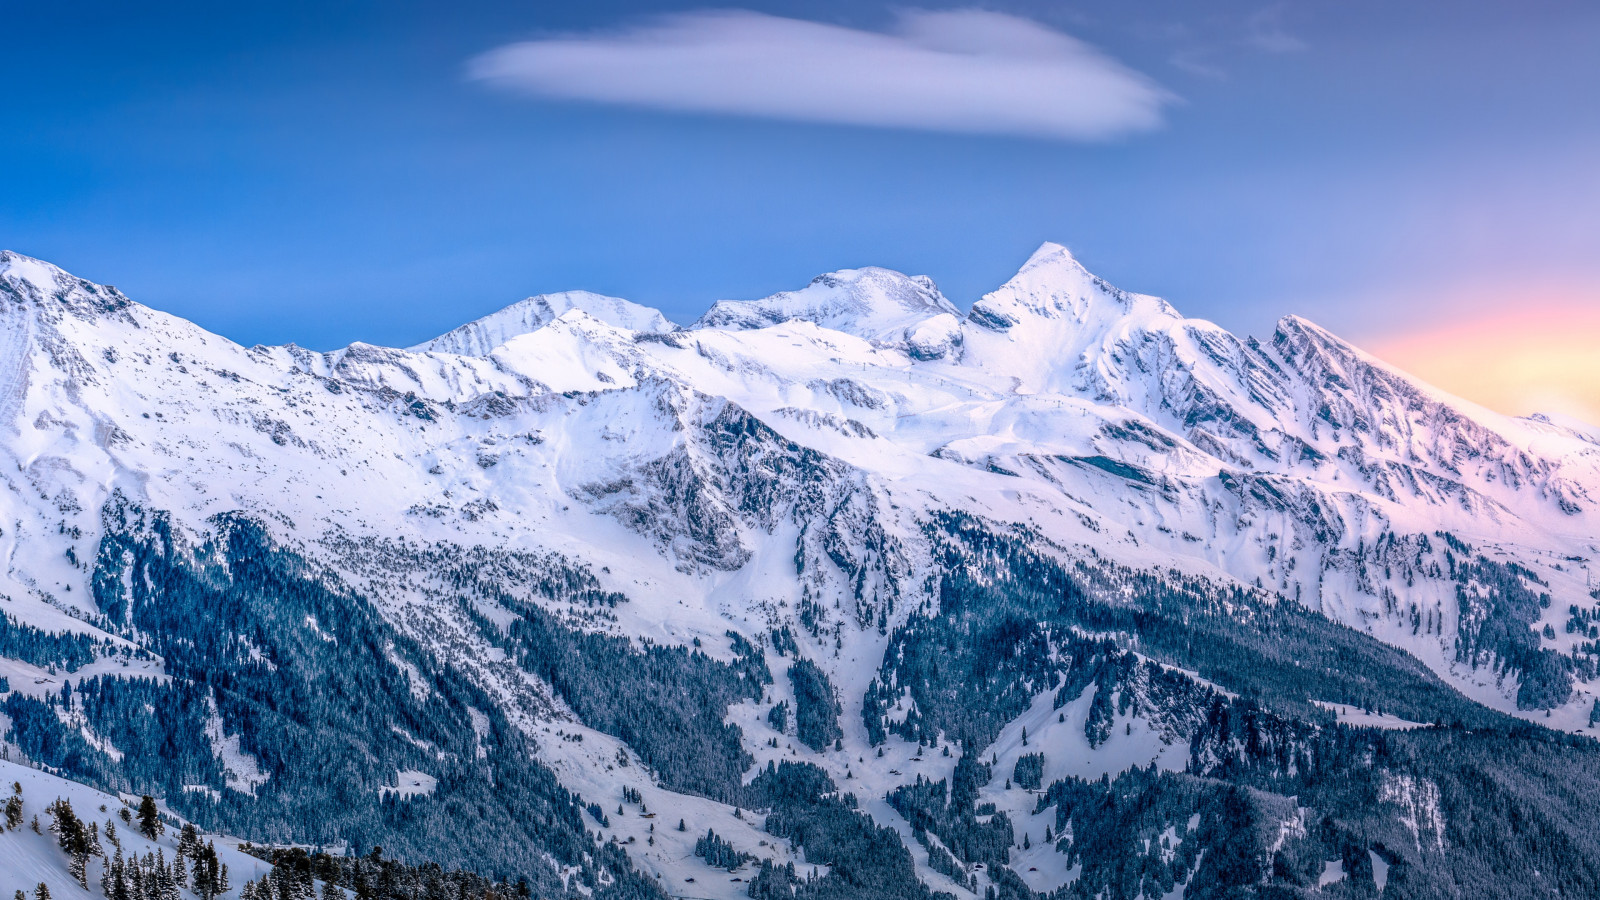 Alpine scenery from Kleine Scheidegg, Switzerland wallpaper 1600x900